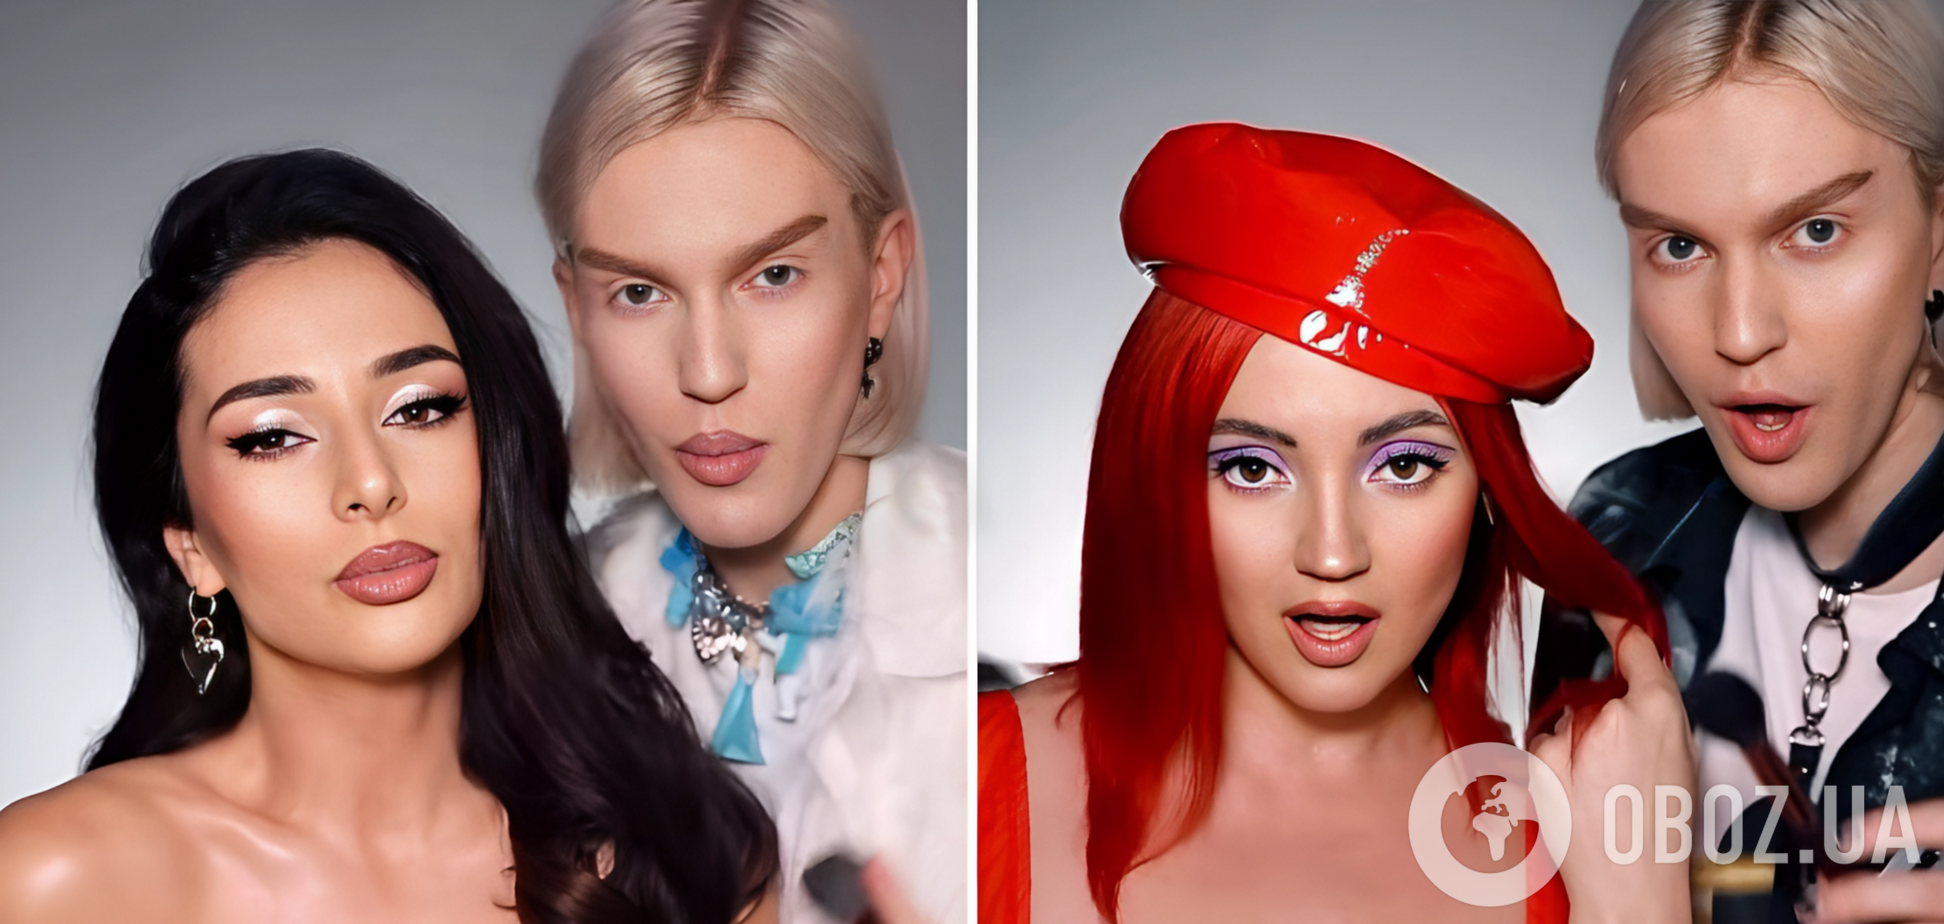 Злата Огневич, Ирина Билык и другие украинские звезды до и после макияжа. Фото